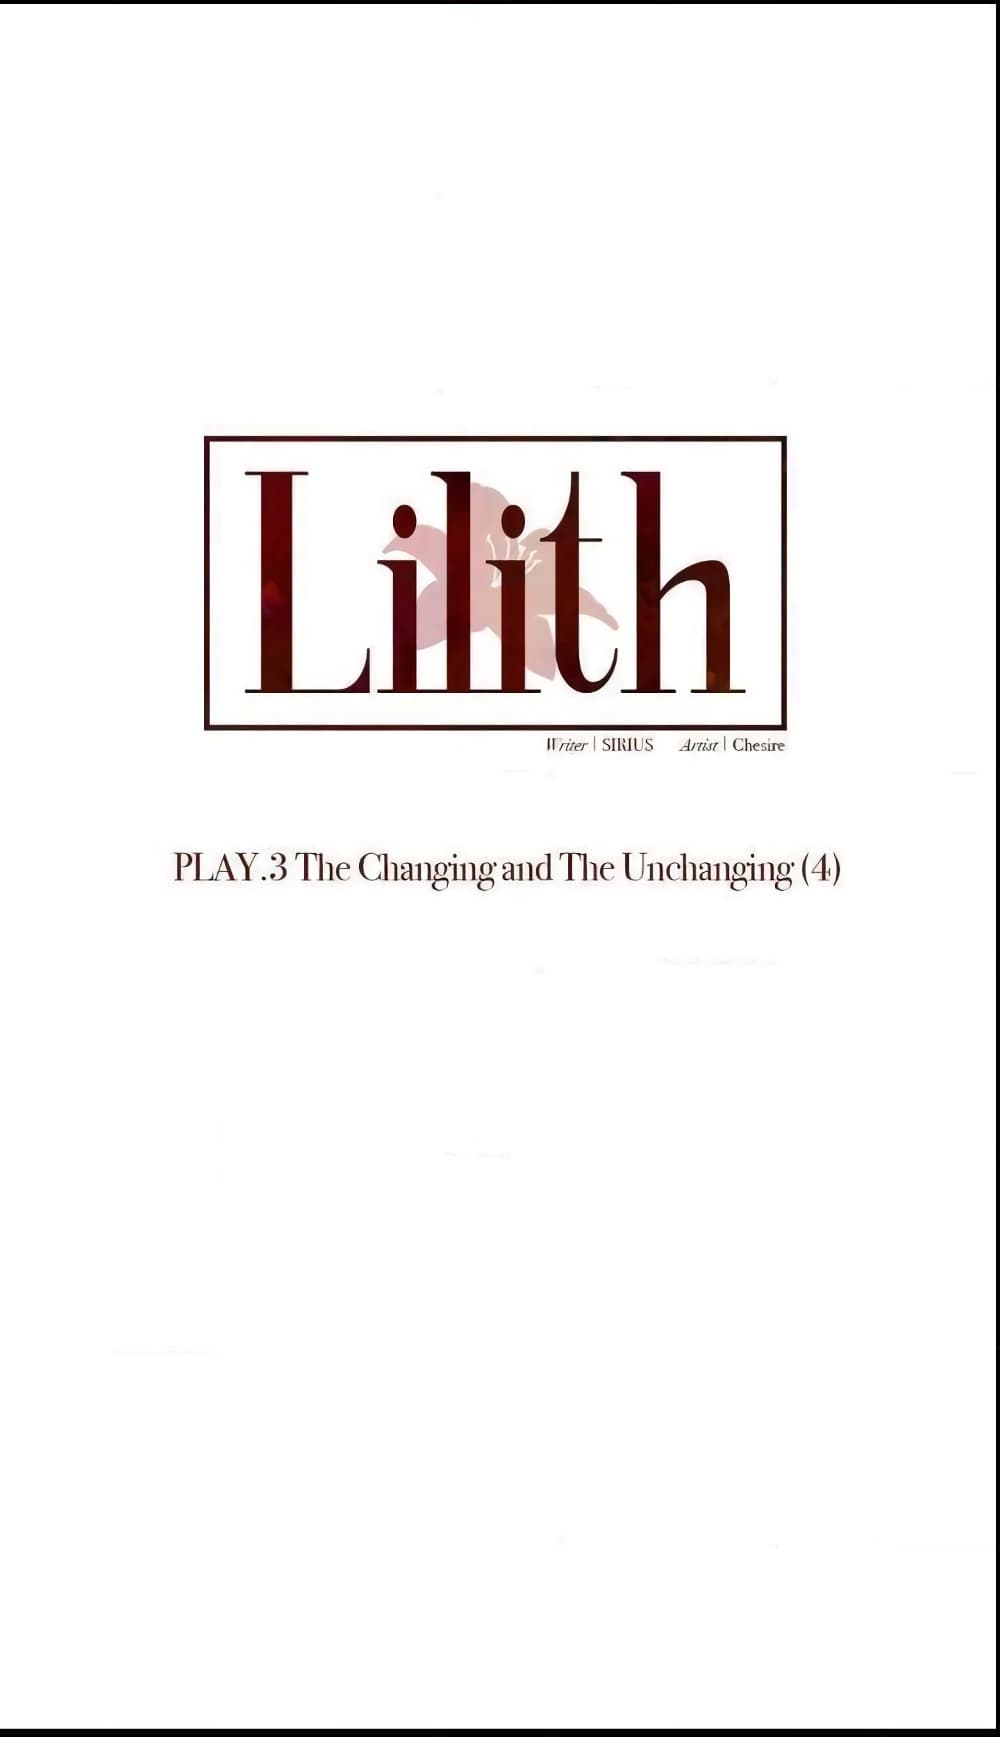 Lilith 20 01